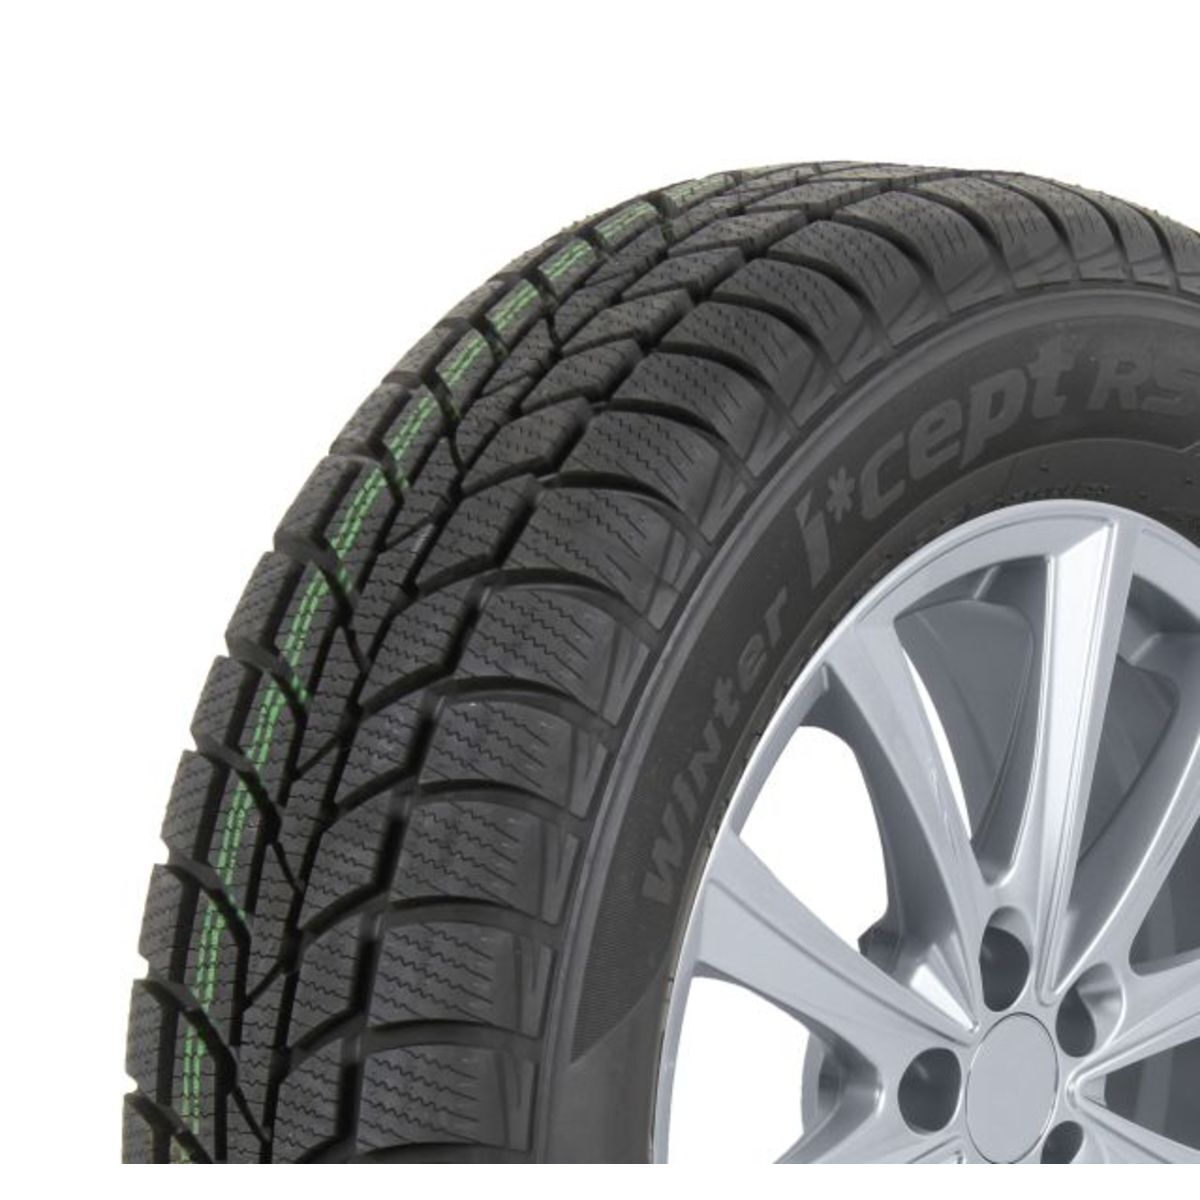 Neumáticos de invierno HANKOOK Winter i*cept RS W442 165/80R13 83T